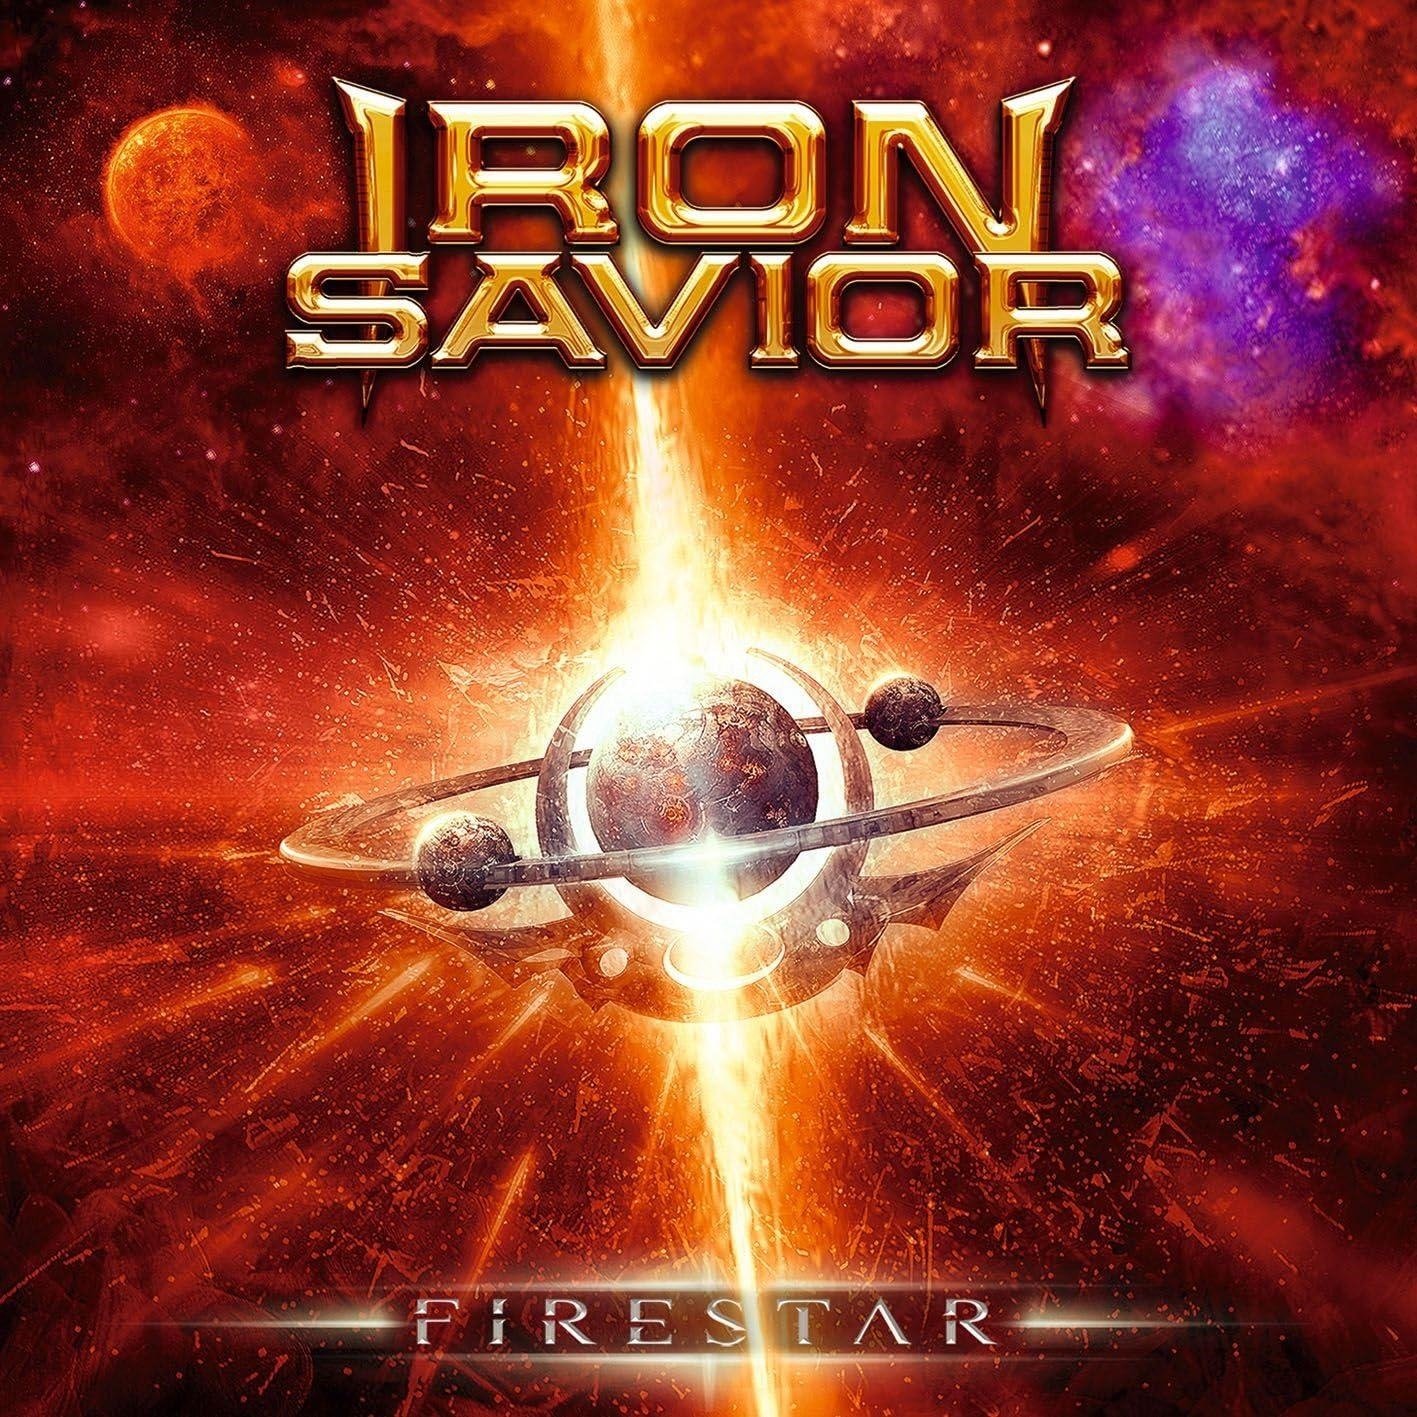 CD Shop - IRON SAVIOR FIRESTAR